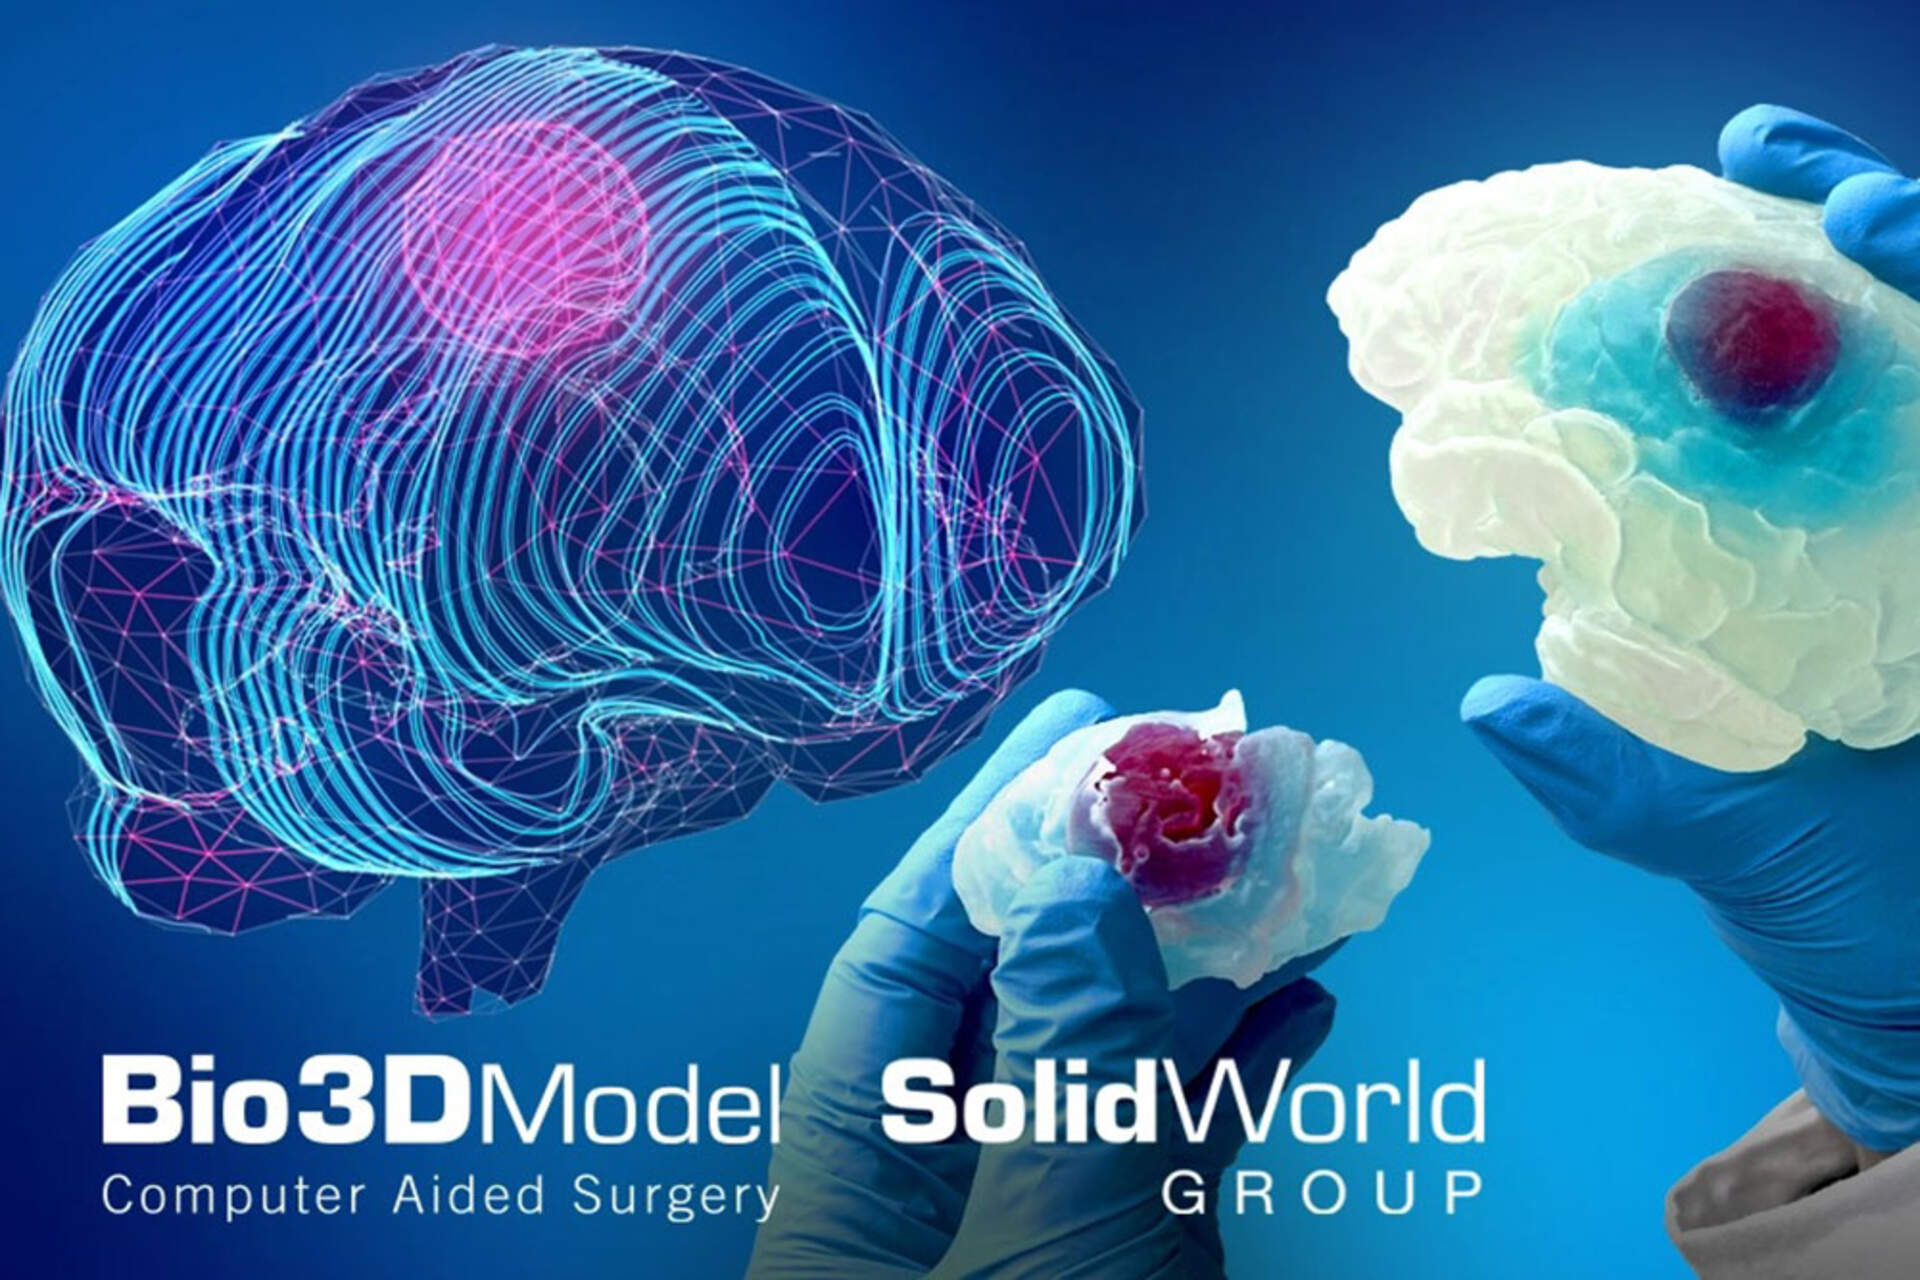 الدماغ البشري: صورة رئيسية للدماغ المصاب بالورم ثلاثية الأبعاد مطبوعة بواسطة SolidWorld Group